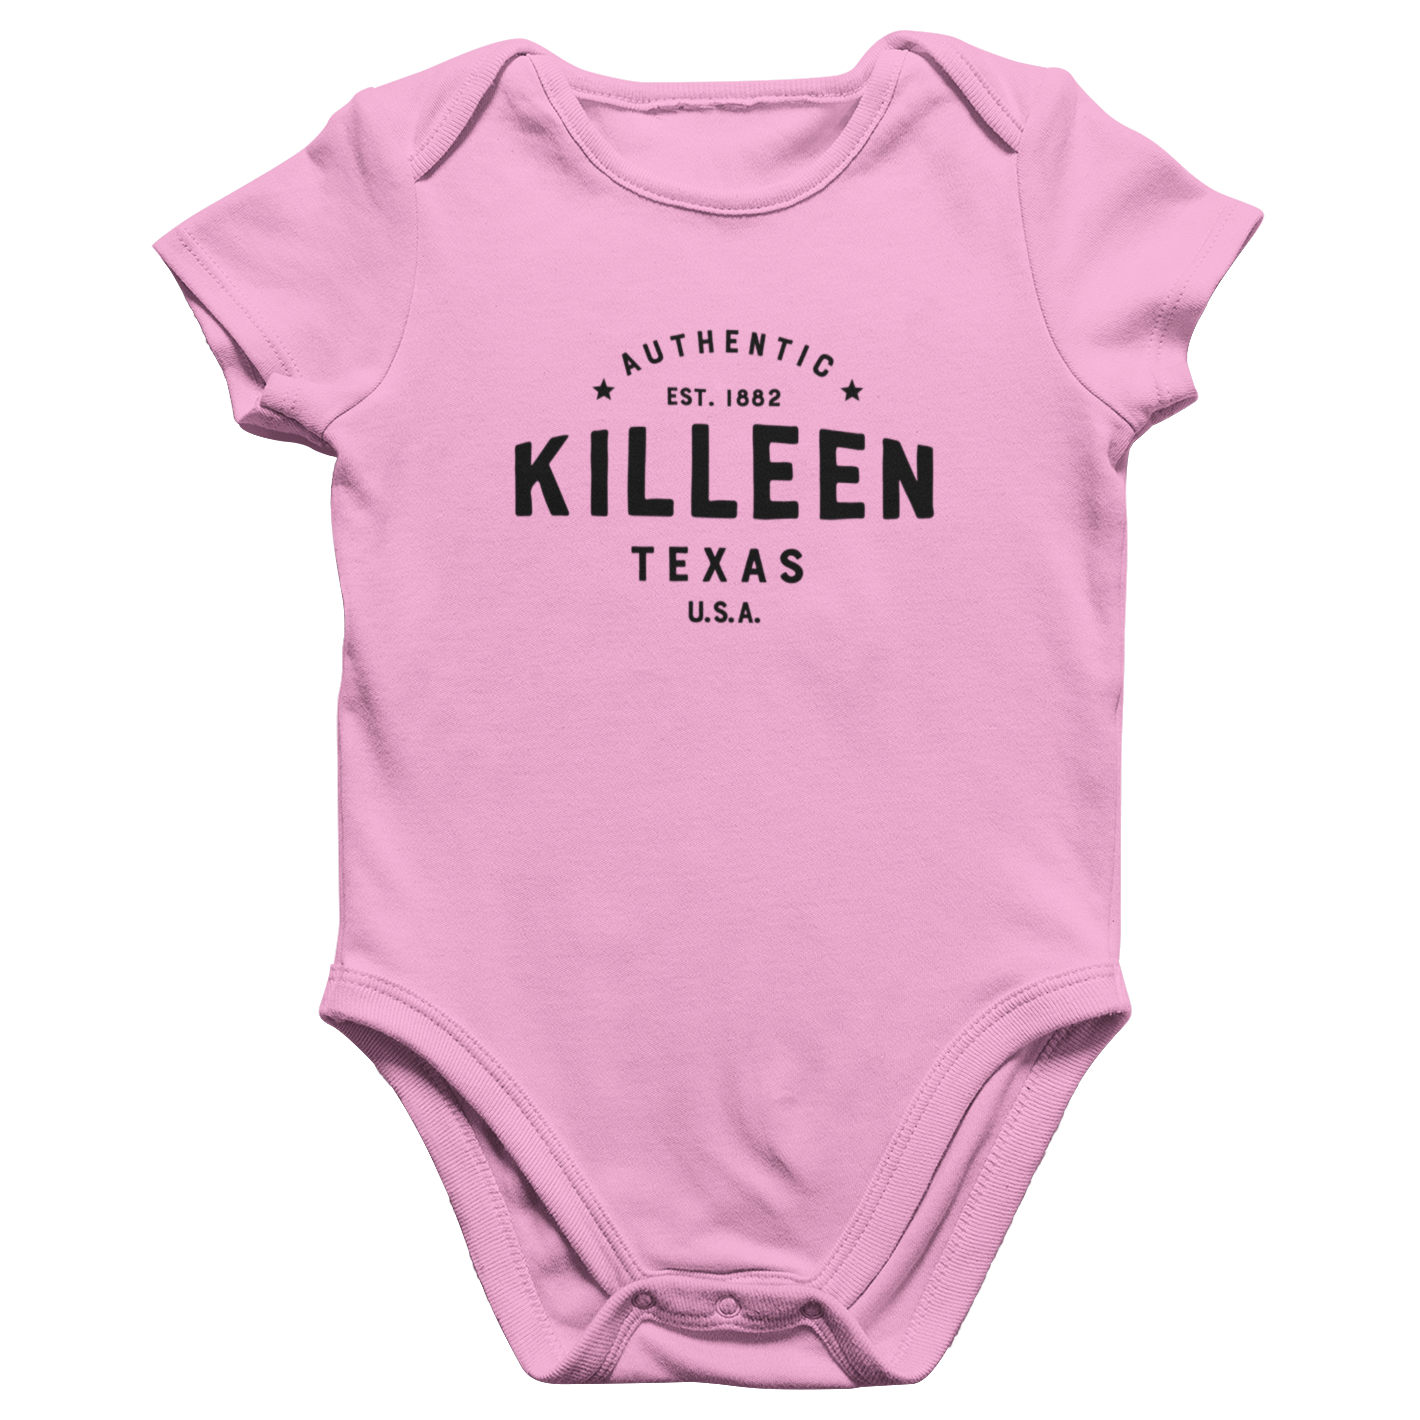 Killeen Texas Infant Onesie - Authentic